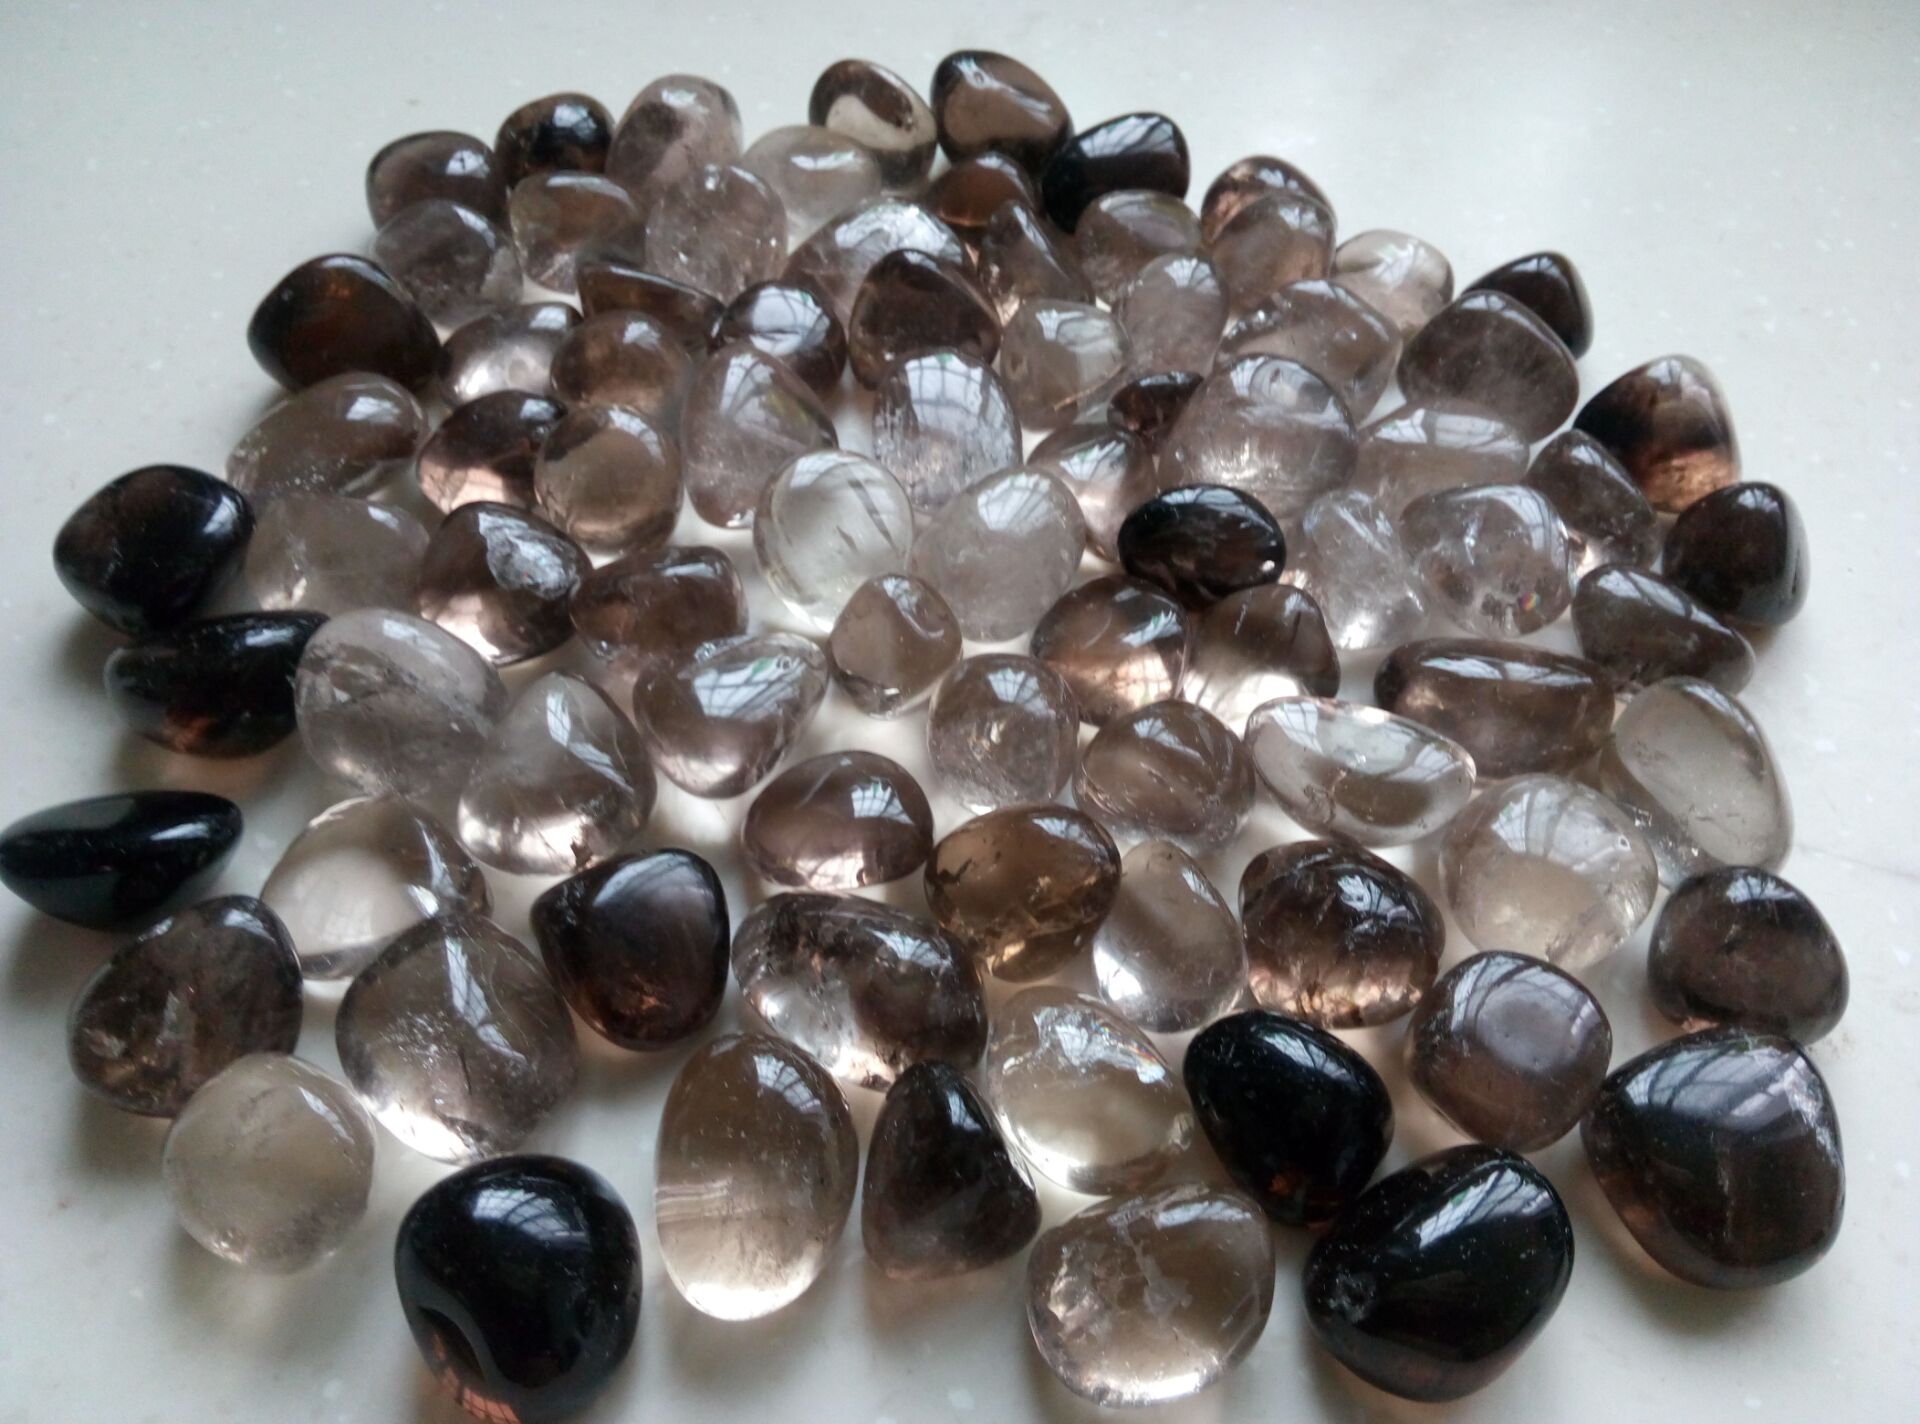 3pc Natural Smoky Quartz Tumbled Quartz Crystals Polished Healing